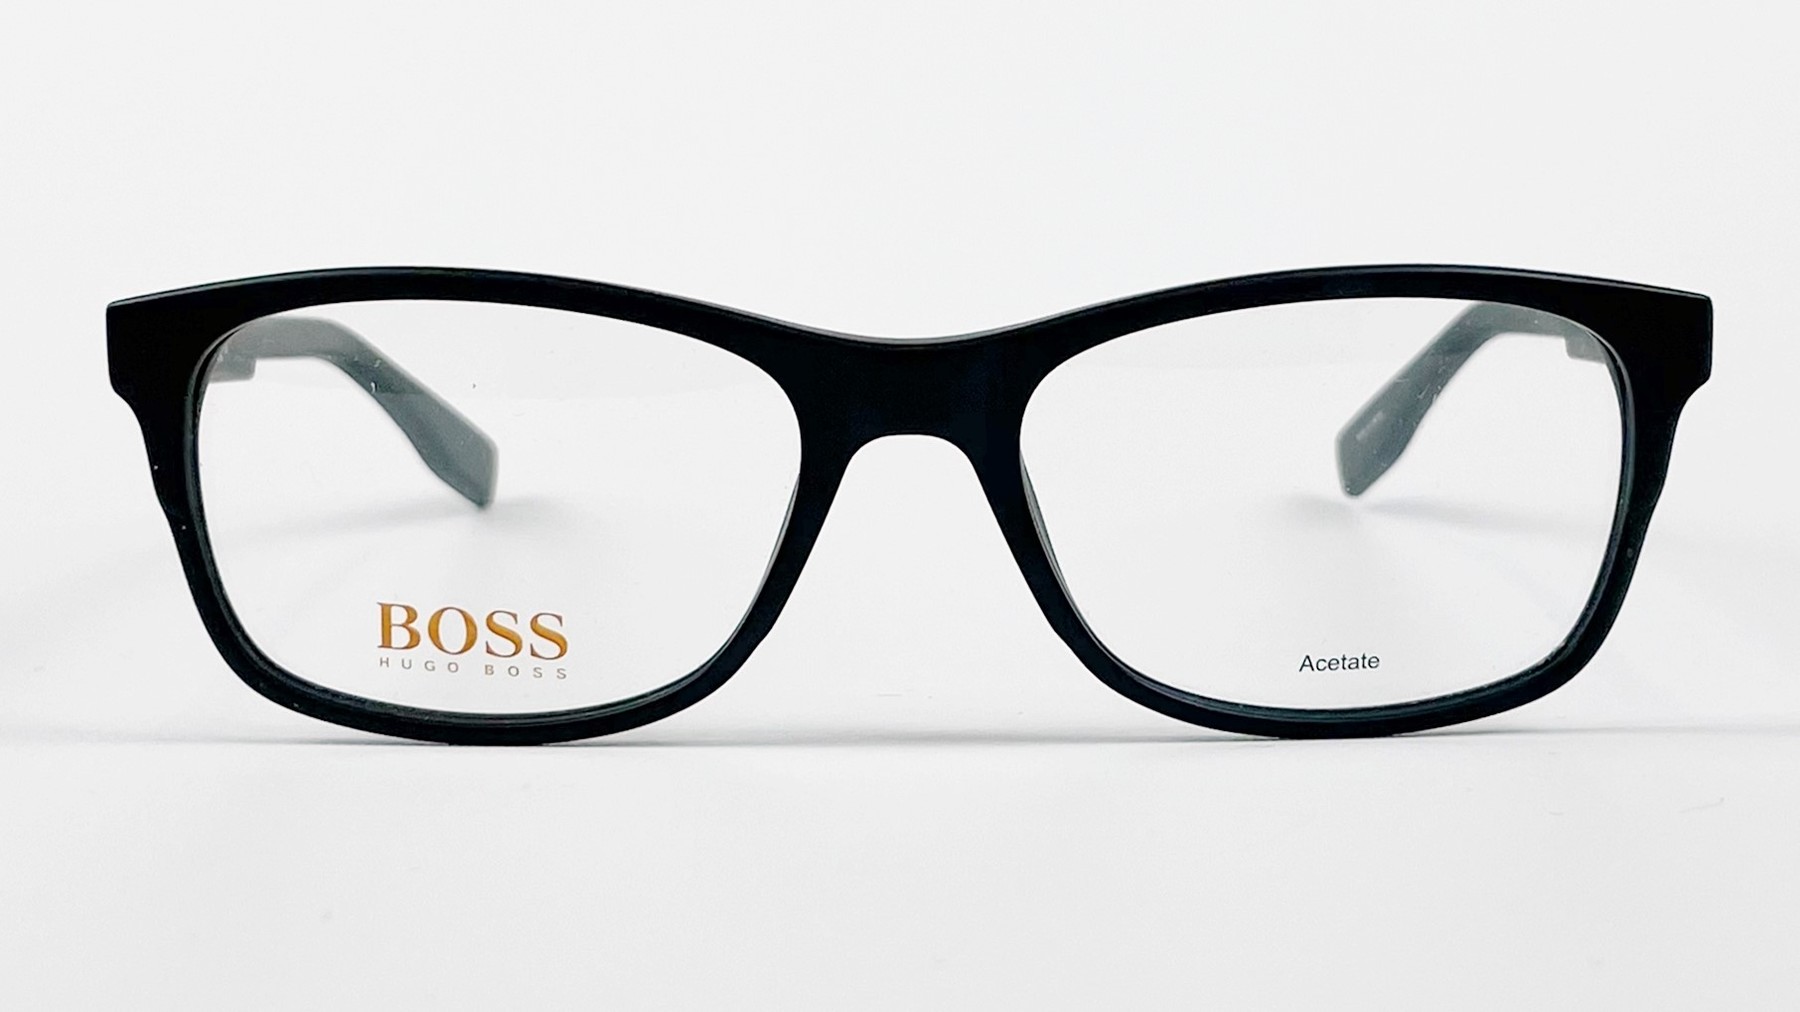 HUGO BOSS BO 0292 807, Korean glasses, sunglasses, eyeglasses, glasses